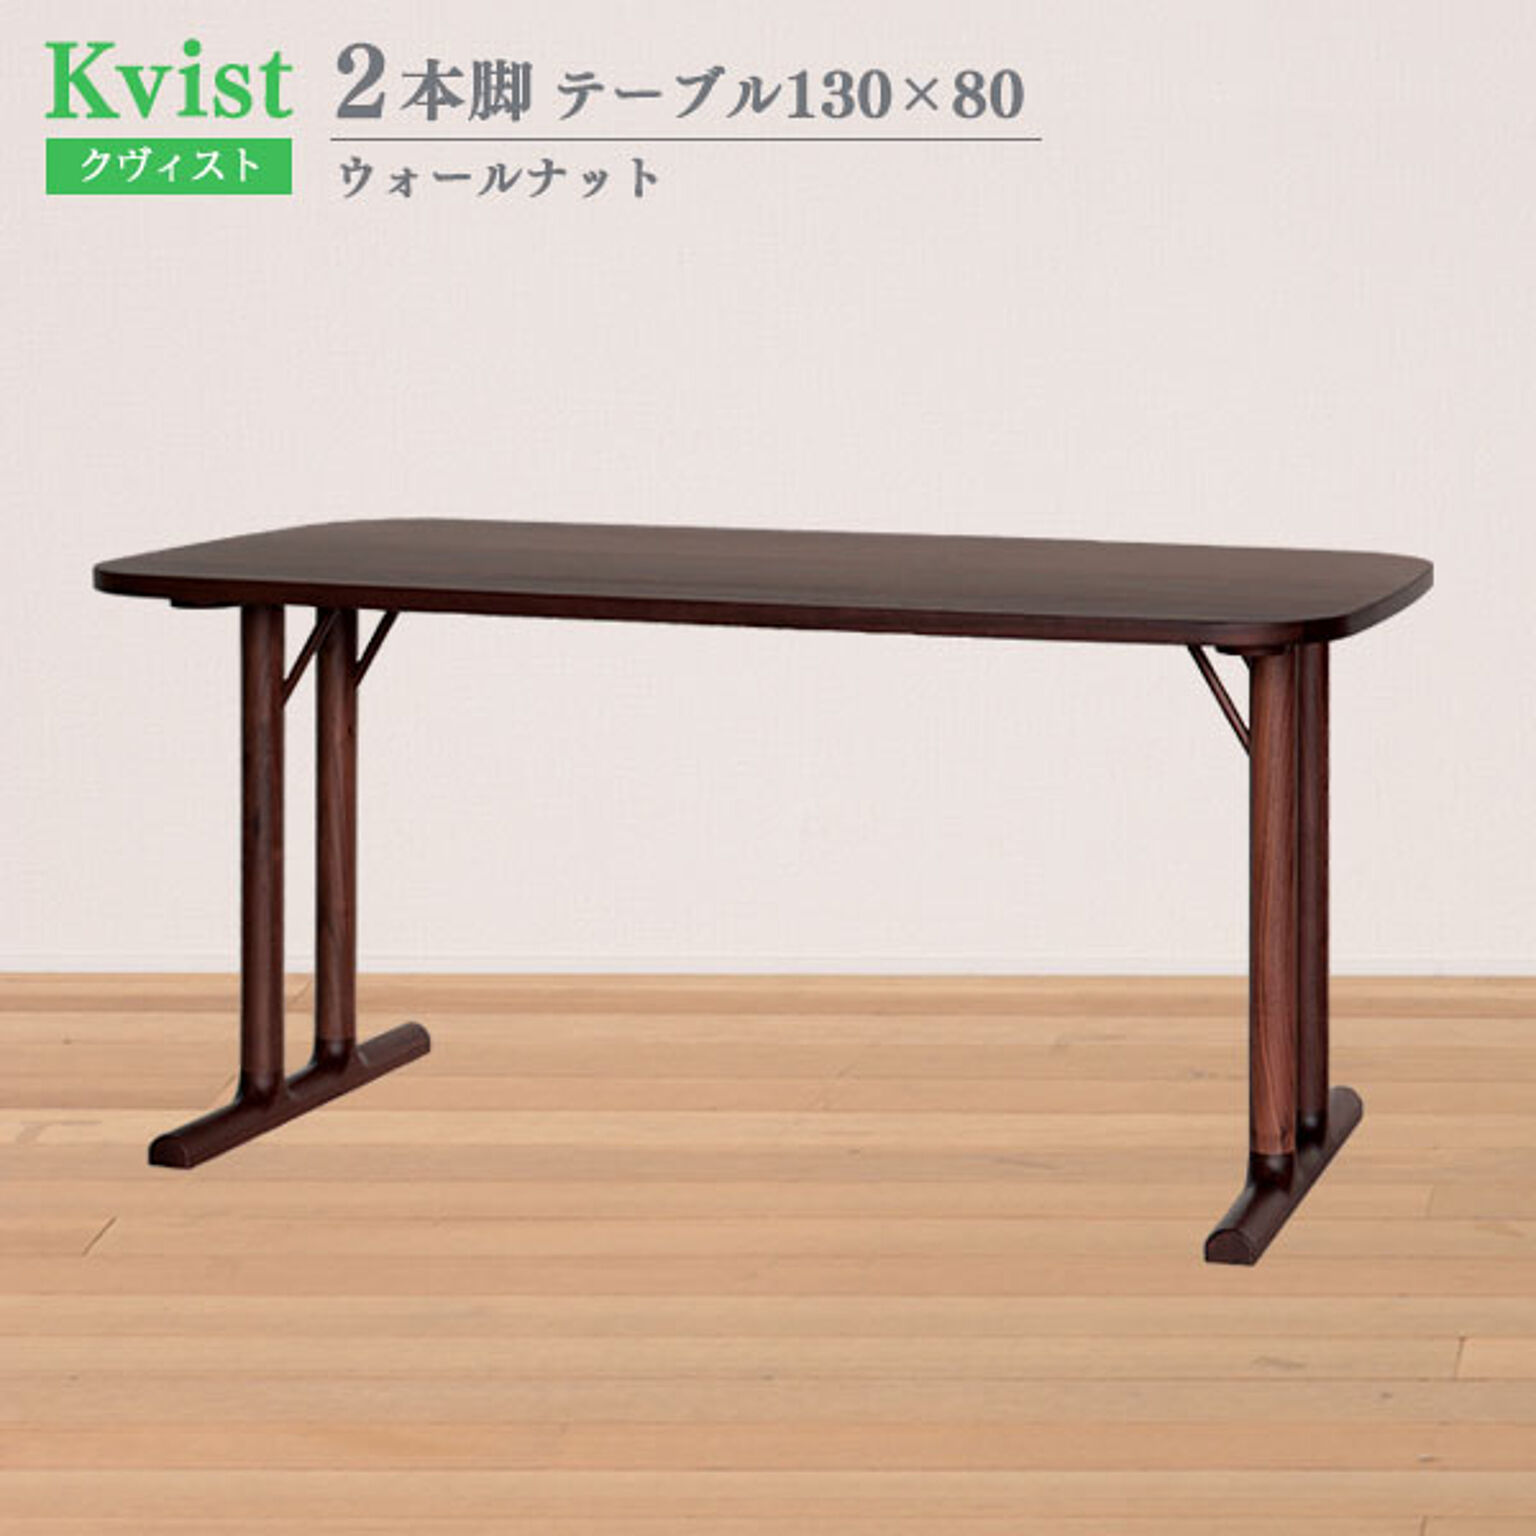 ダイニングテーブル  2本脚 130cm幅 80cm奥行 ウォールナット 木製 北欧 食卓テーブル ウッドダイニングテーブル 4人掛け 食卓 ダイニング 組立式 クヴィスト Kvist